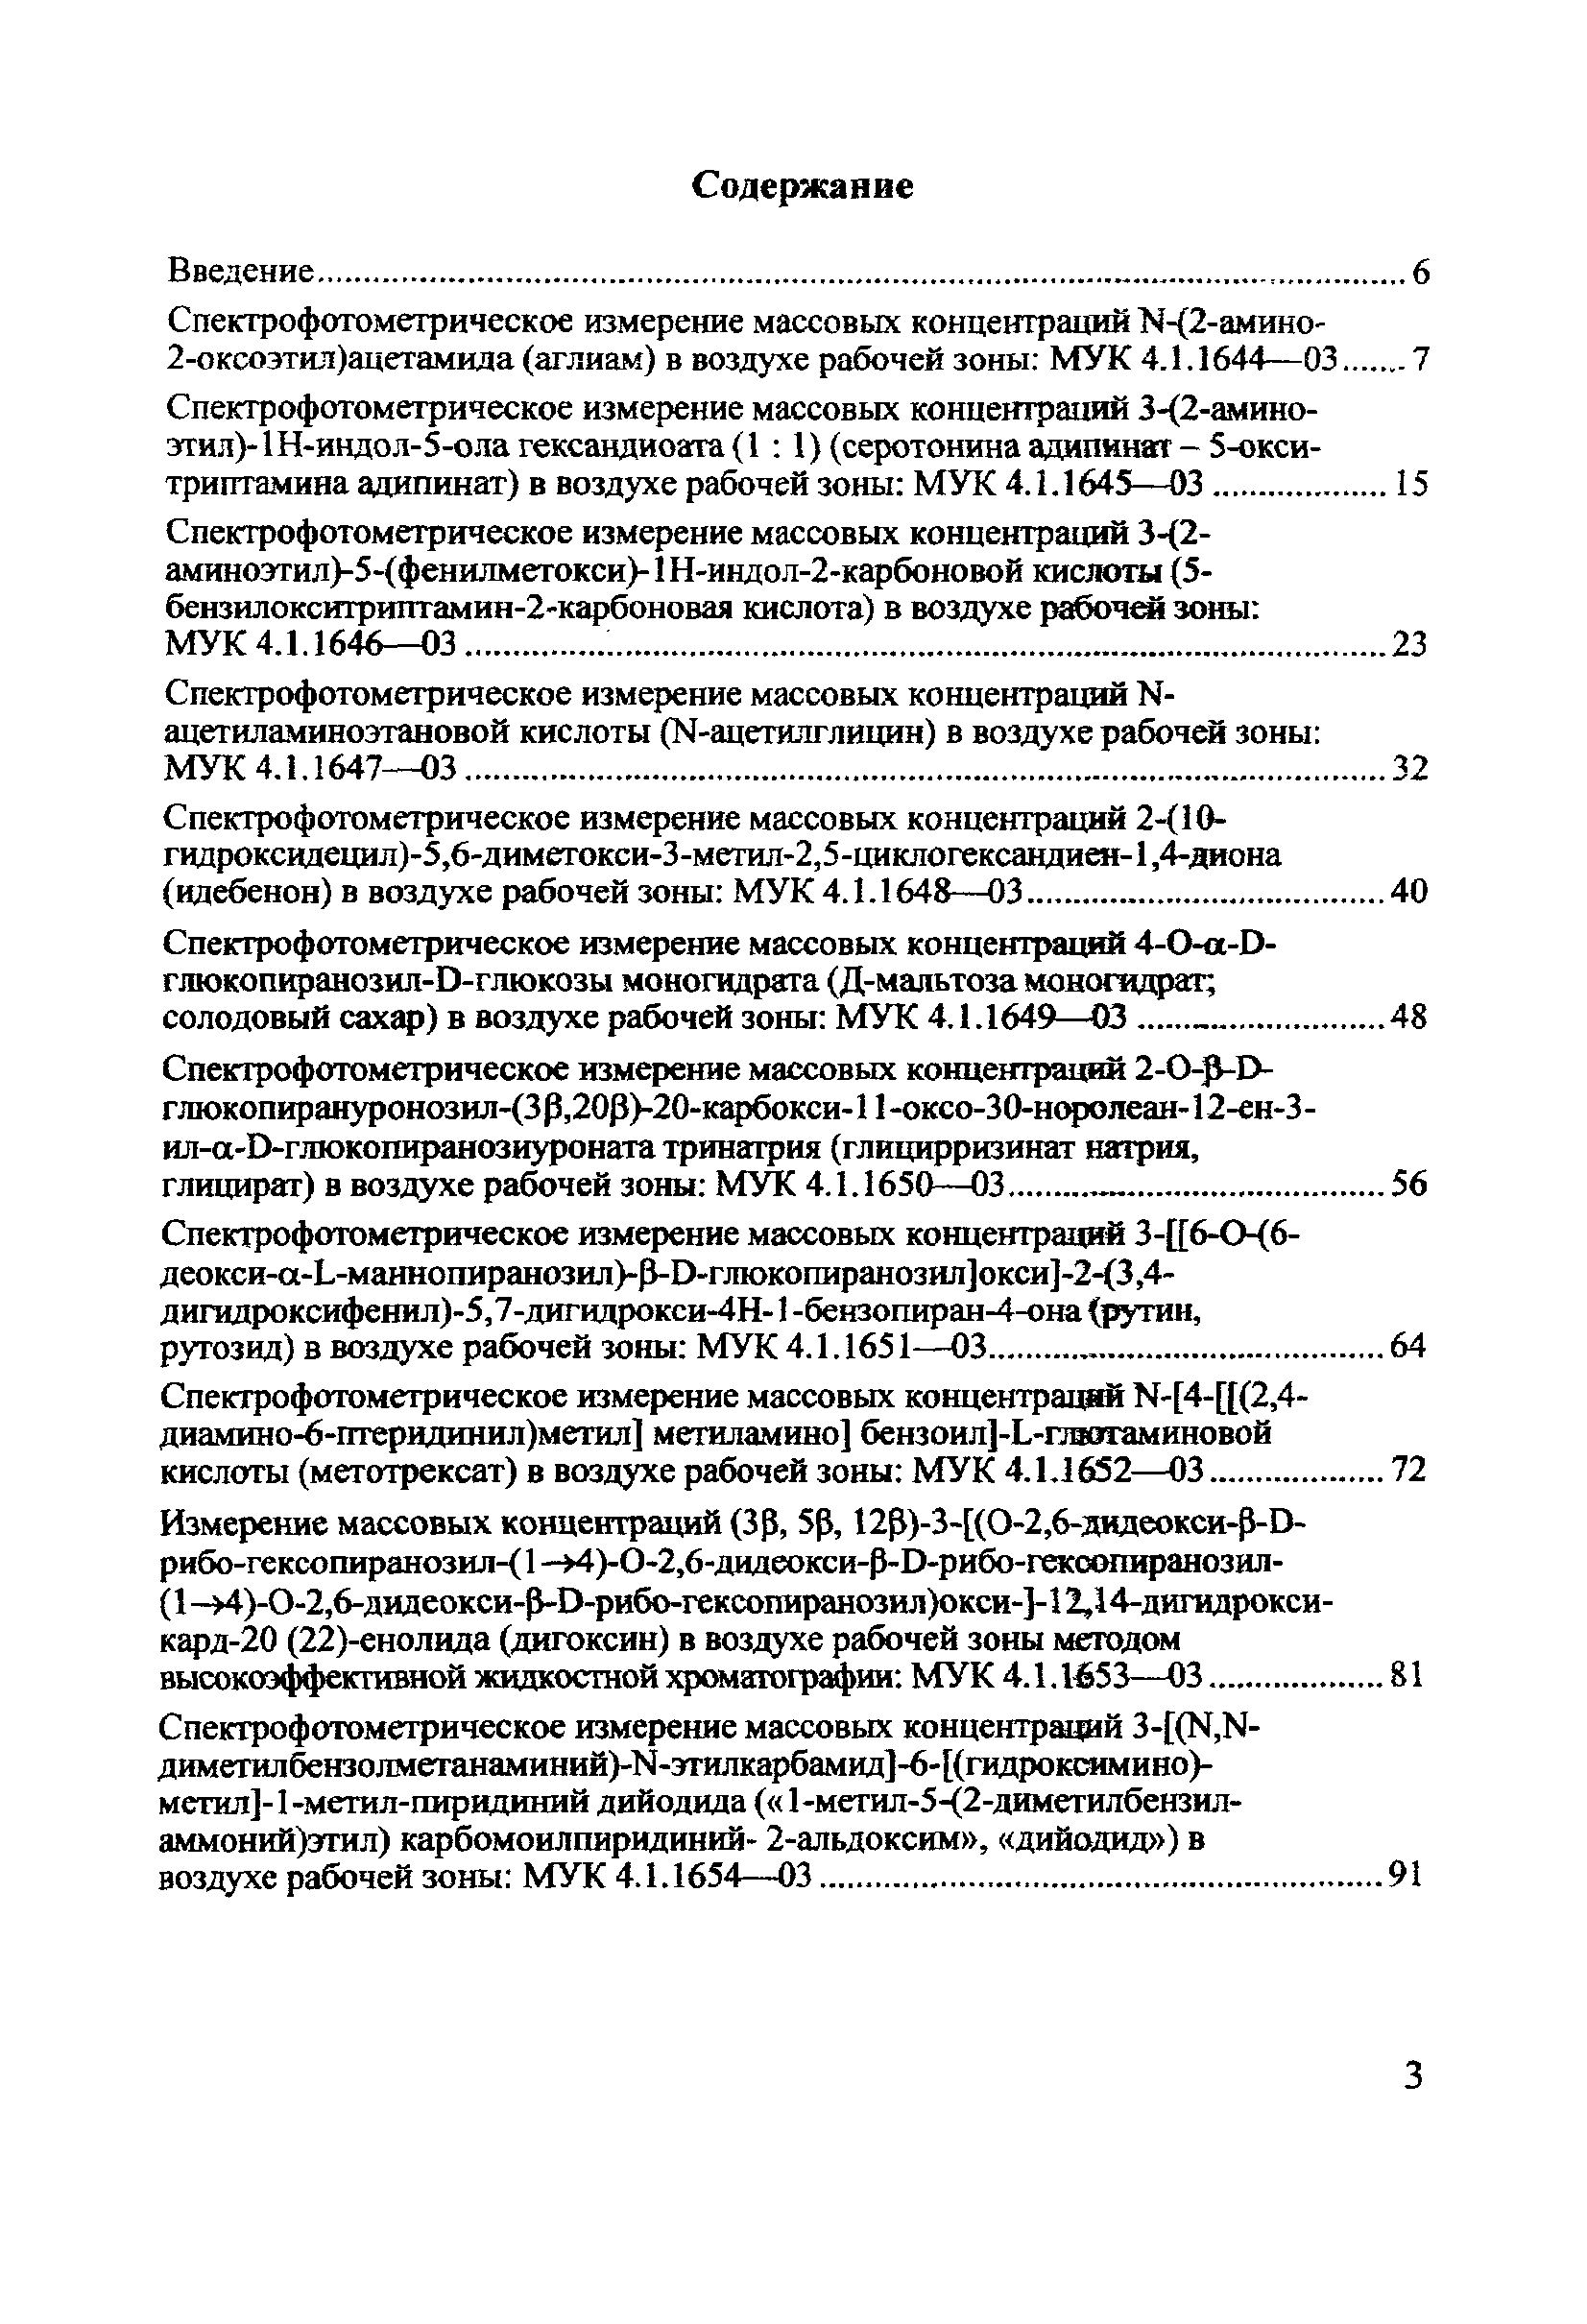 МУК 4.1.1654-03